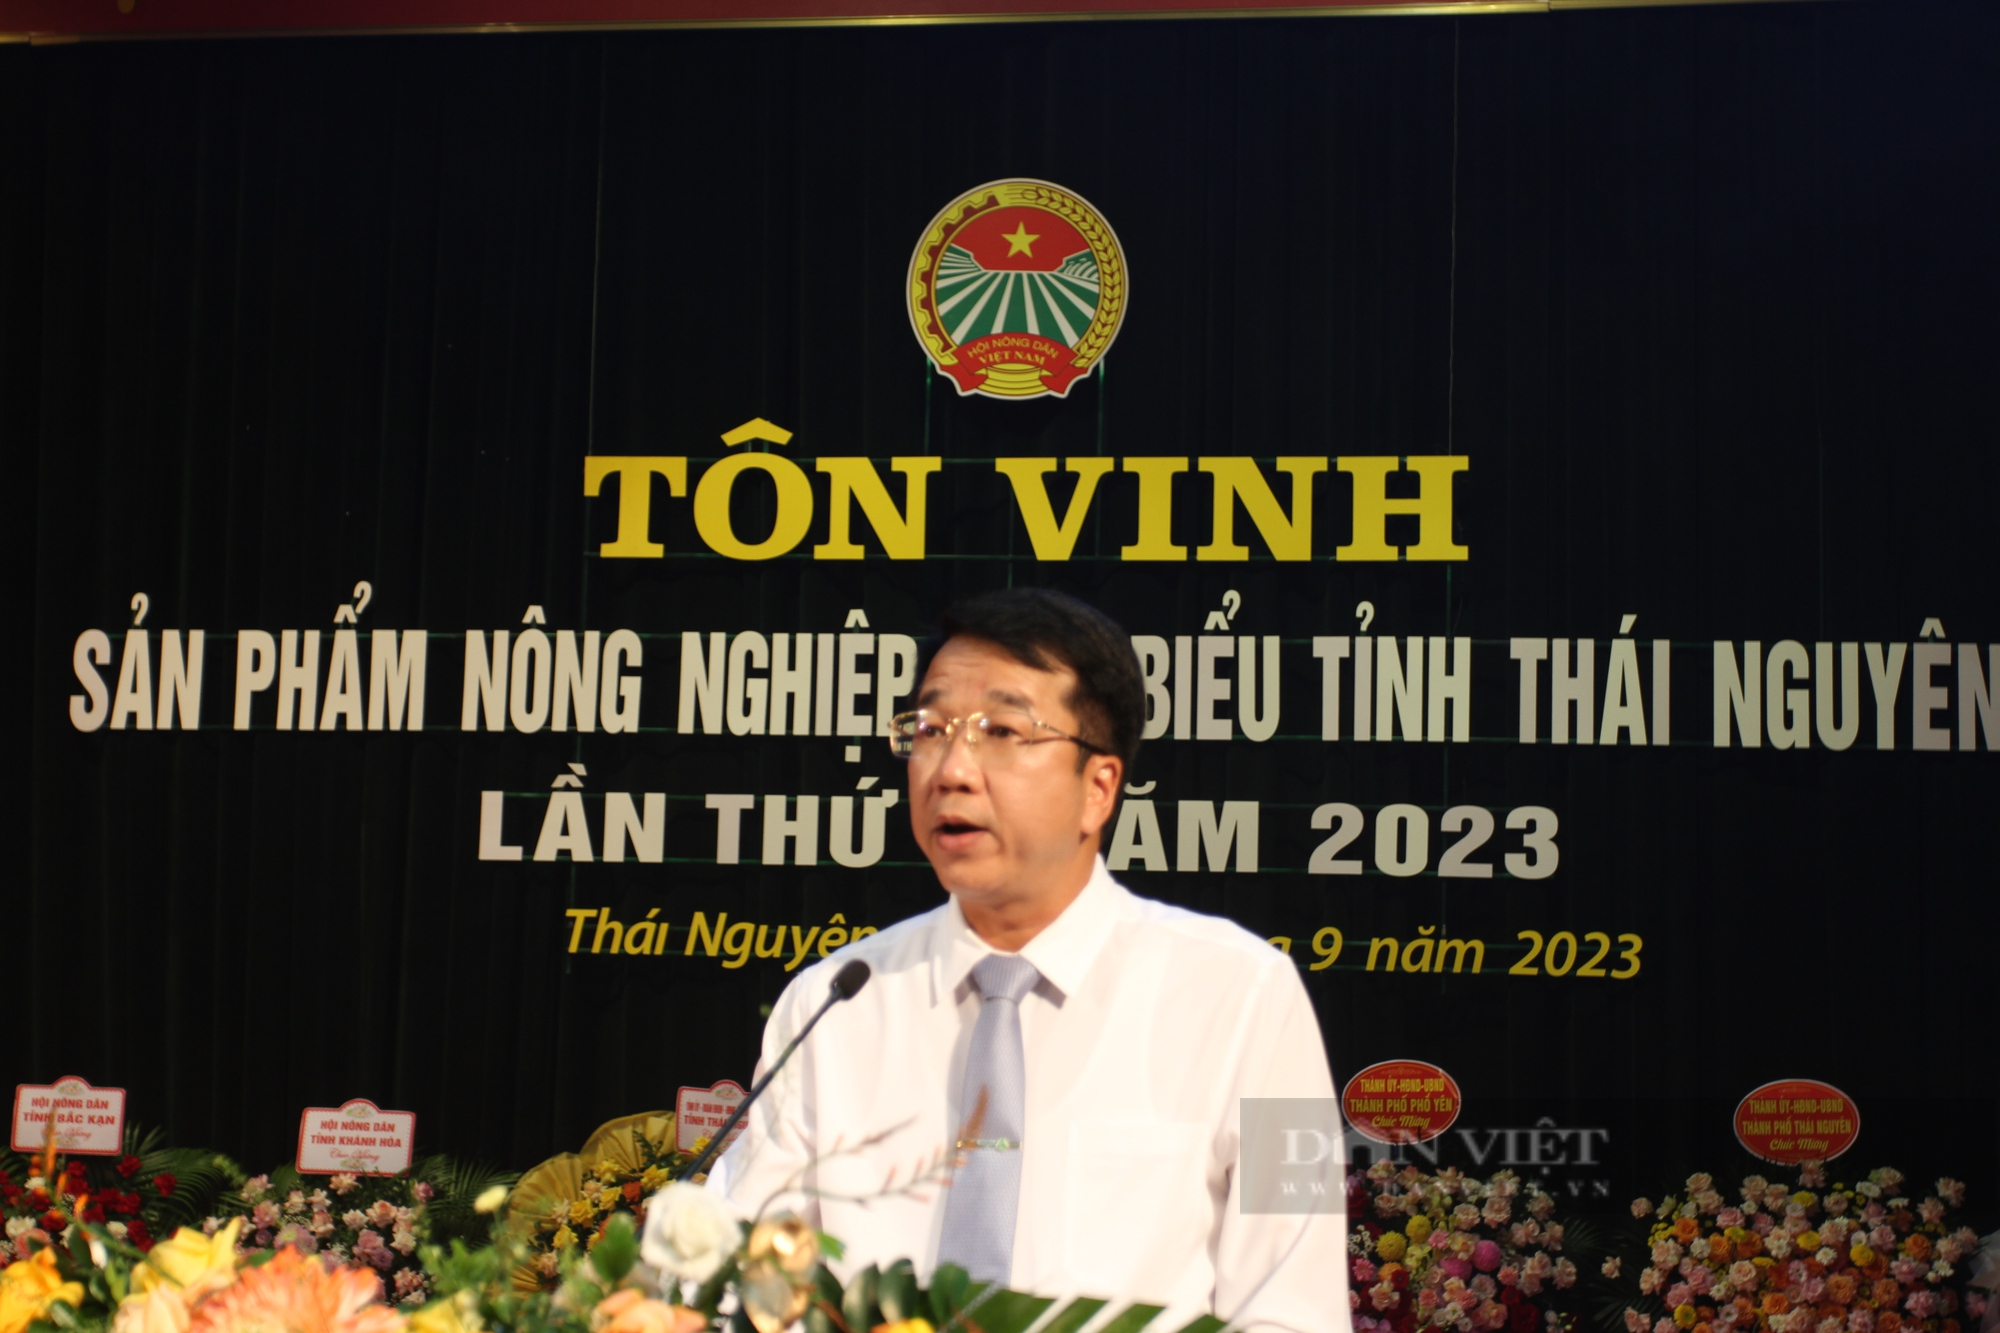 Thái Nguyên: Tôn vinh 37 sản phẩm nông nghiệp tiêu biểu lần thứ 6 năm 2023 - Ảnh 3.